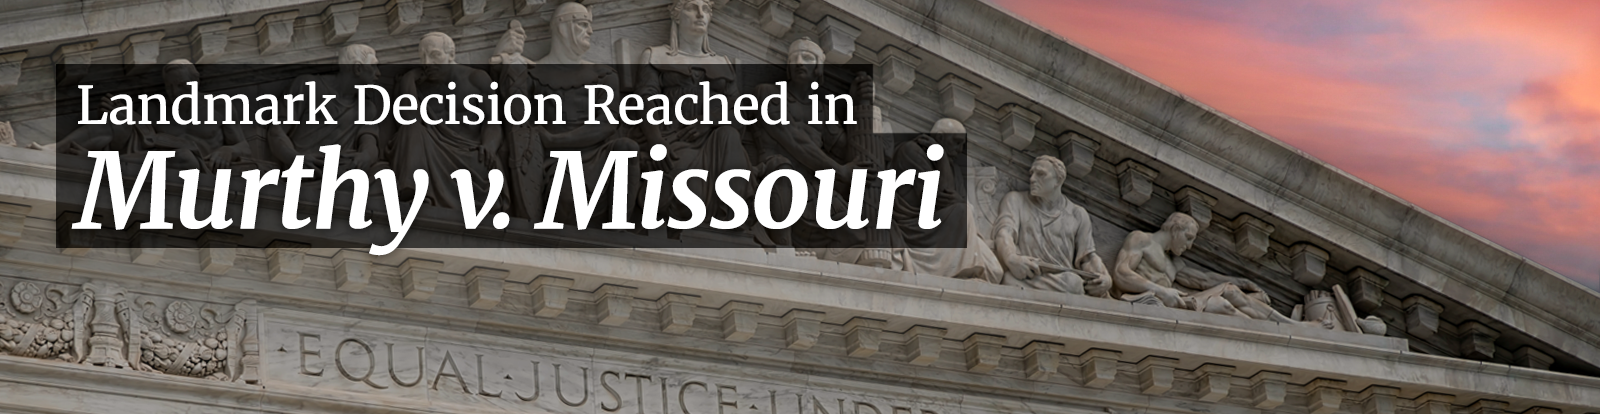 Children’s Health Defense Responds to Supreme Court Murthy v. Missouri Decision